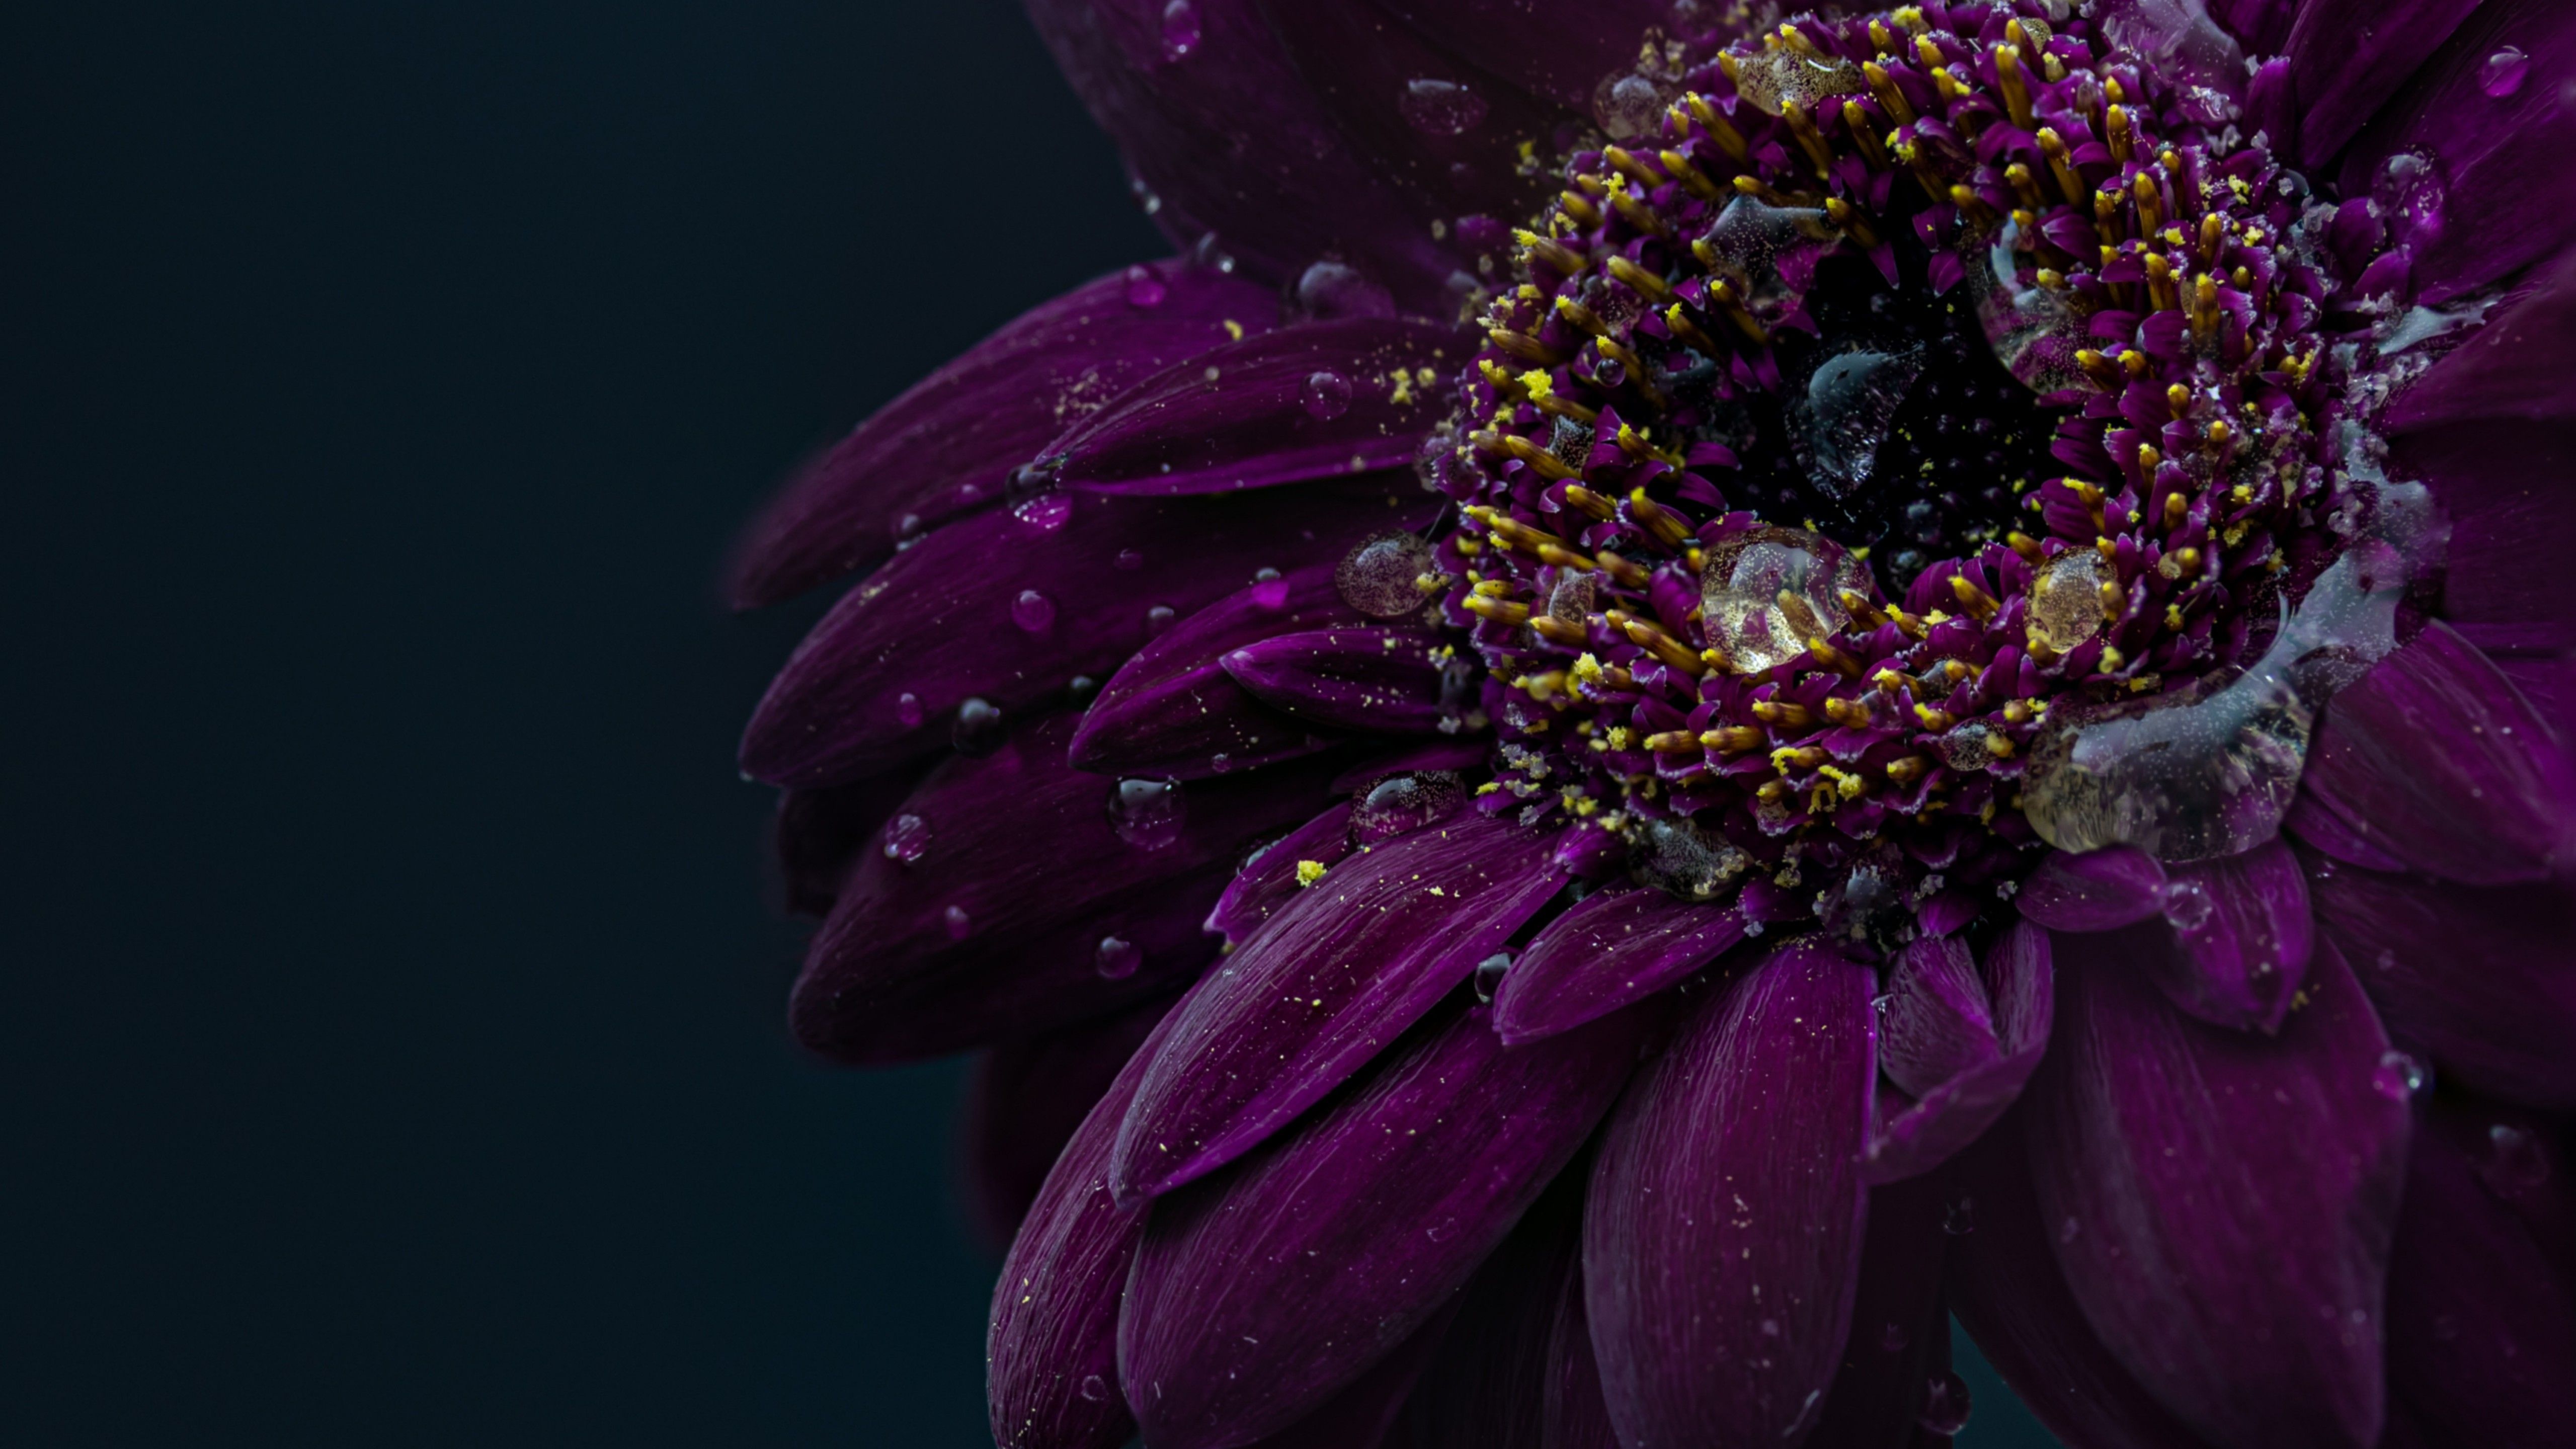 Gerbera flower 4K Wallpaper, Purple flower, Dark, Rain droplets, 5K, Flowers